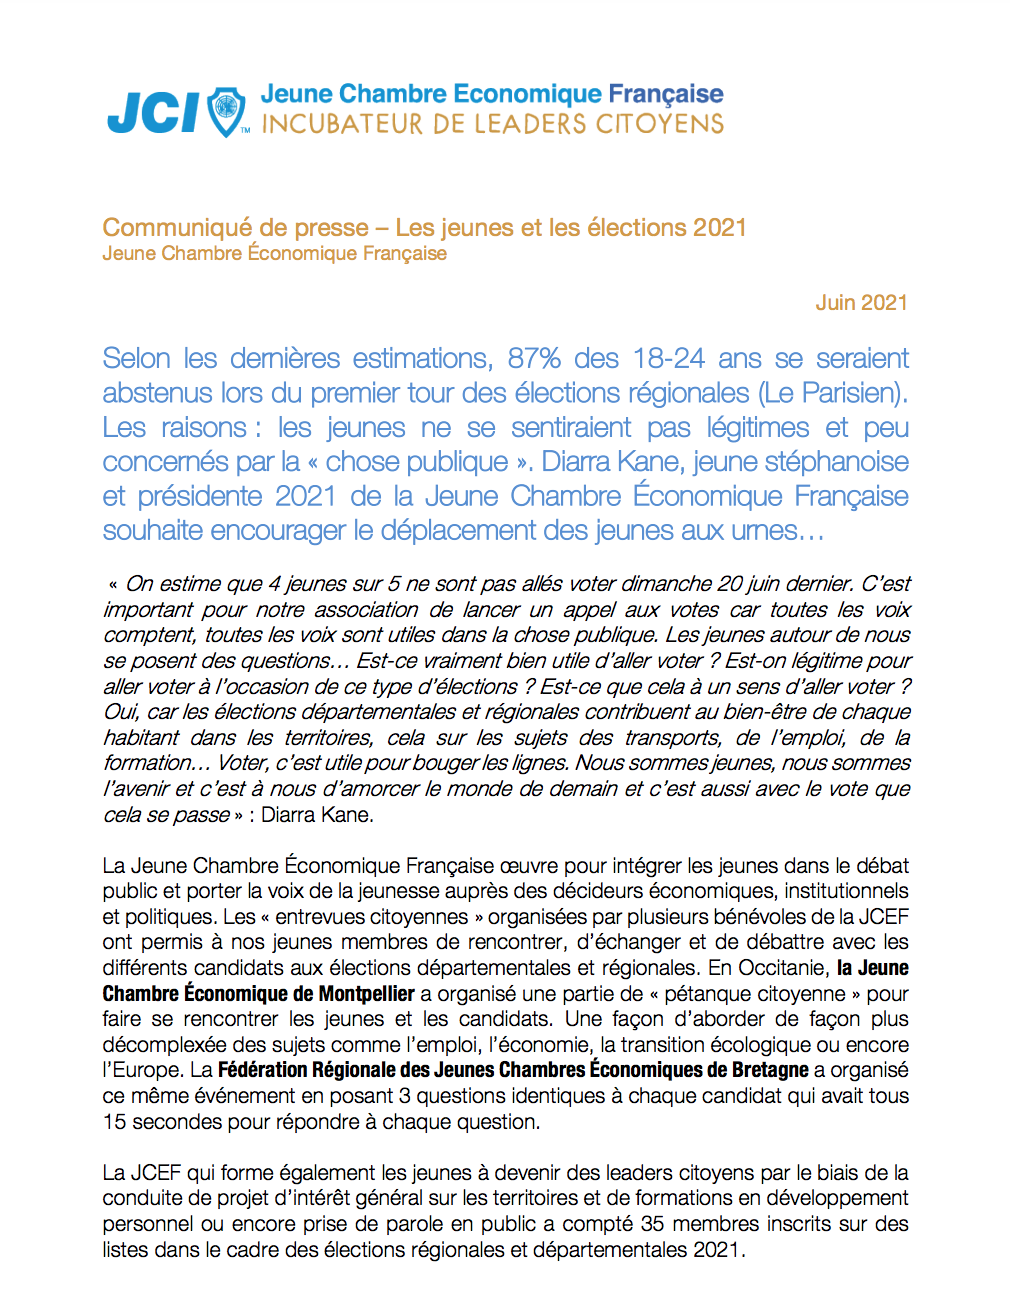 Communiqué de presse de la JCEF sur le second tour des élections régionales et départementales 2021